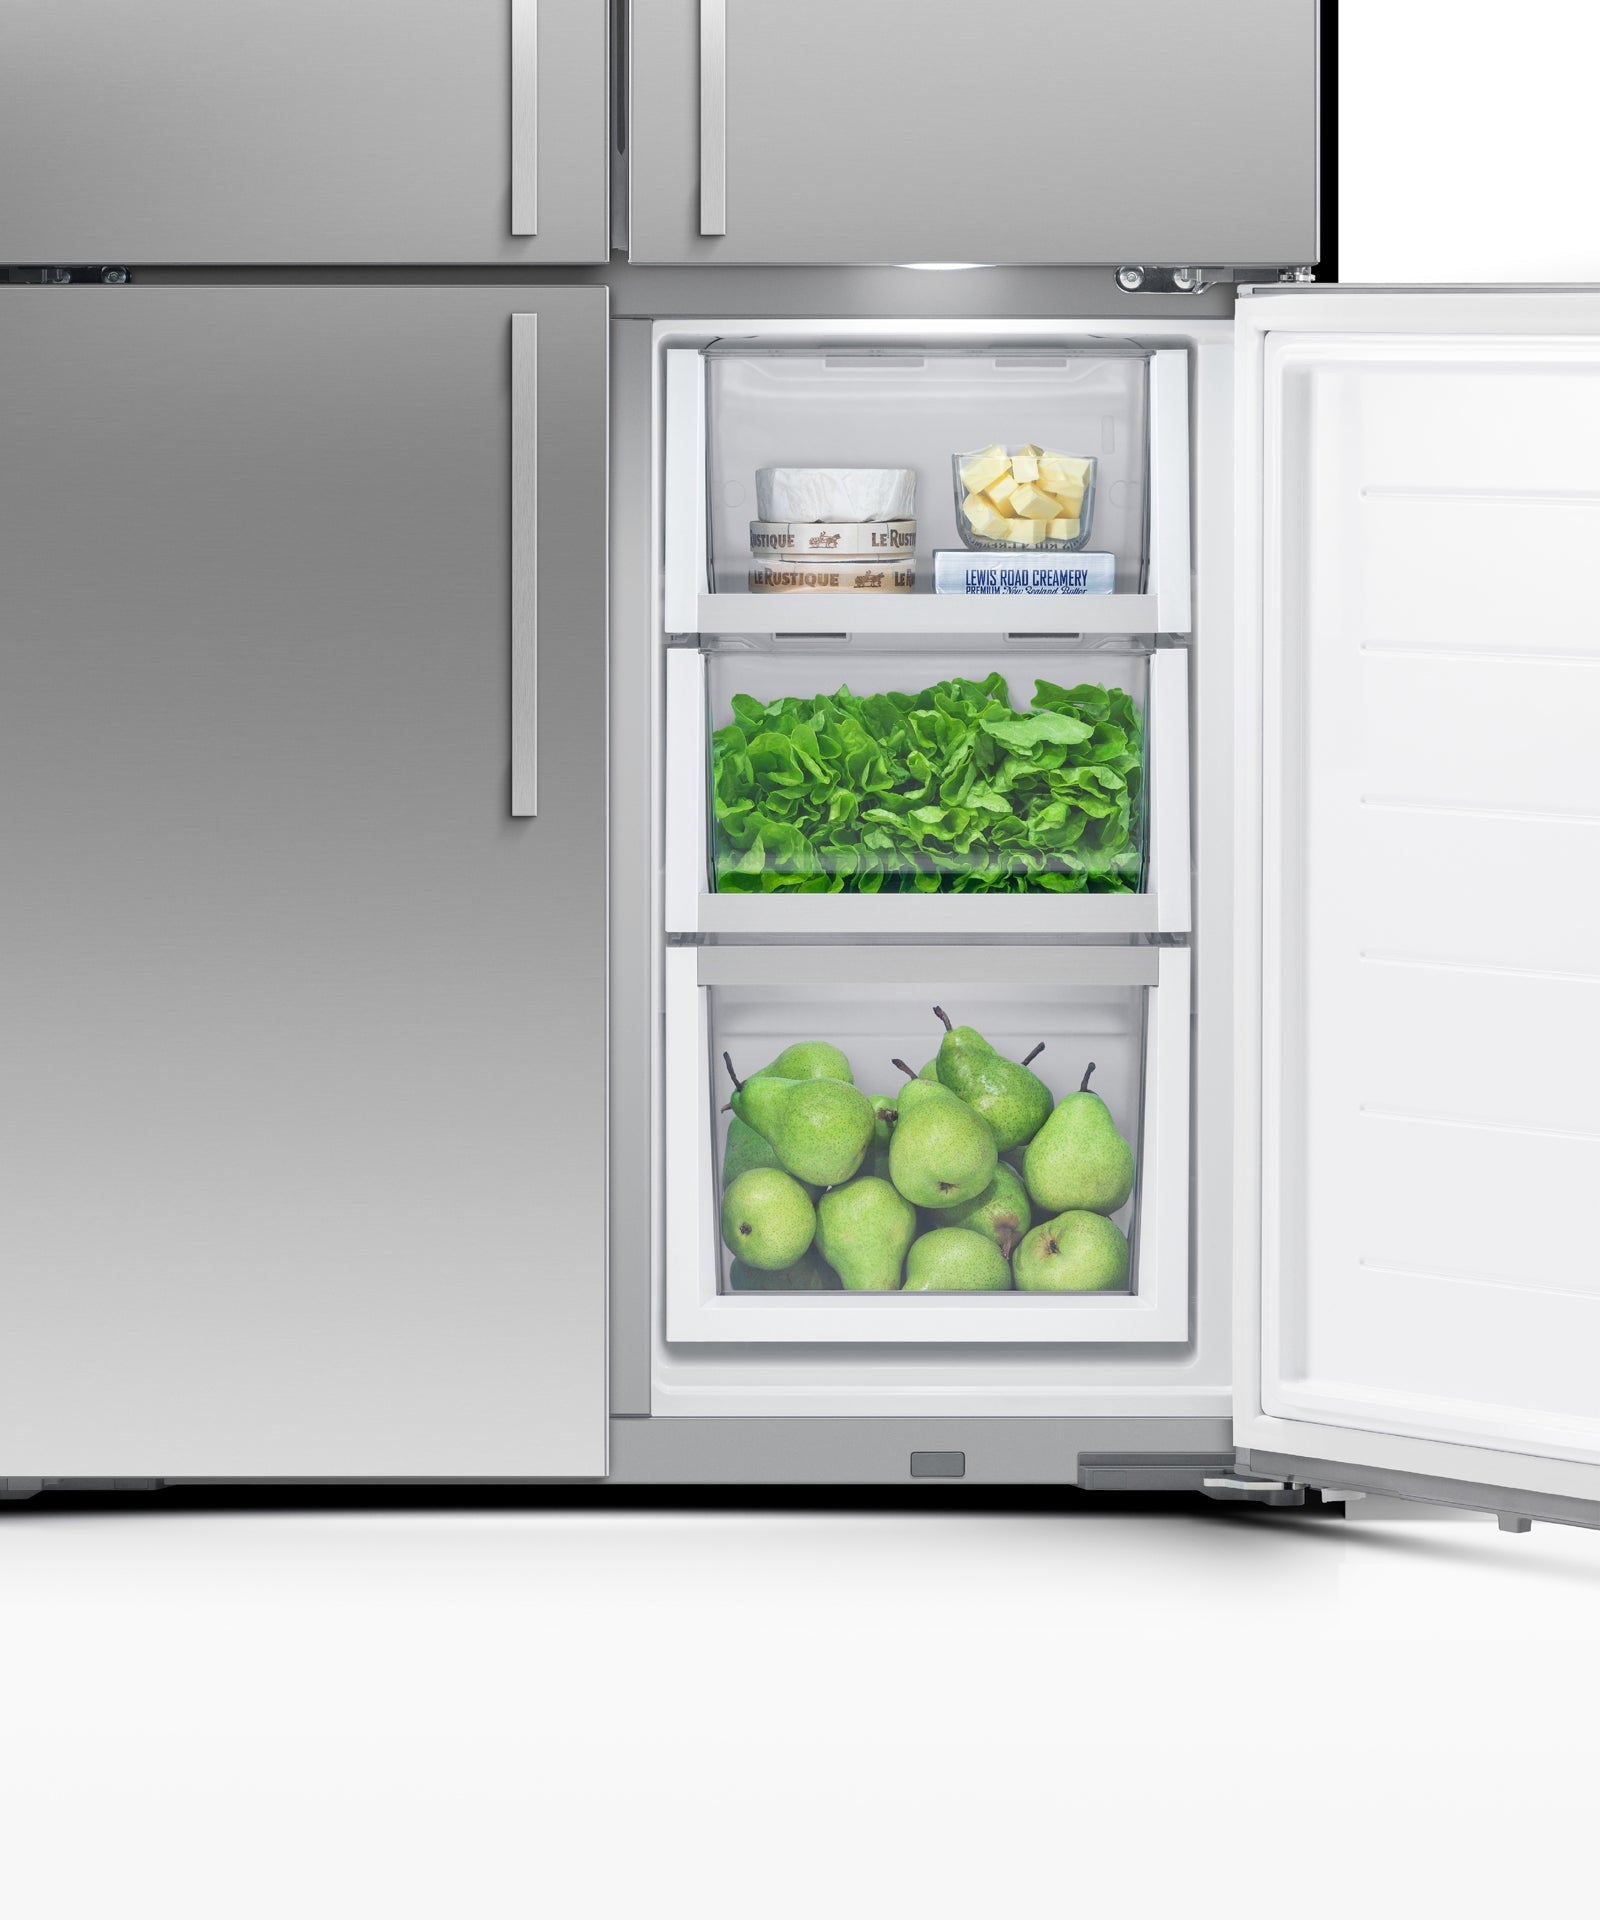 Freestanding Quad Door Refrigerator Freezer, 36", 18.9 cu ft, Ice & Water, pdp